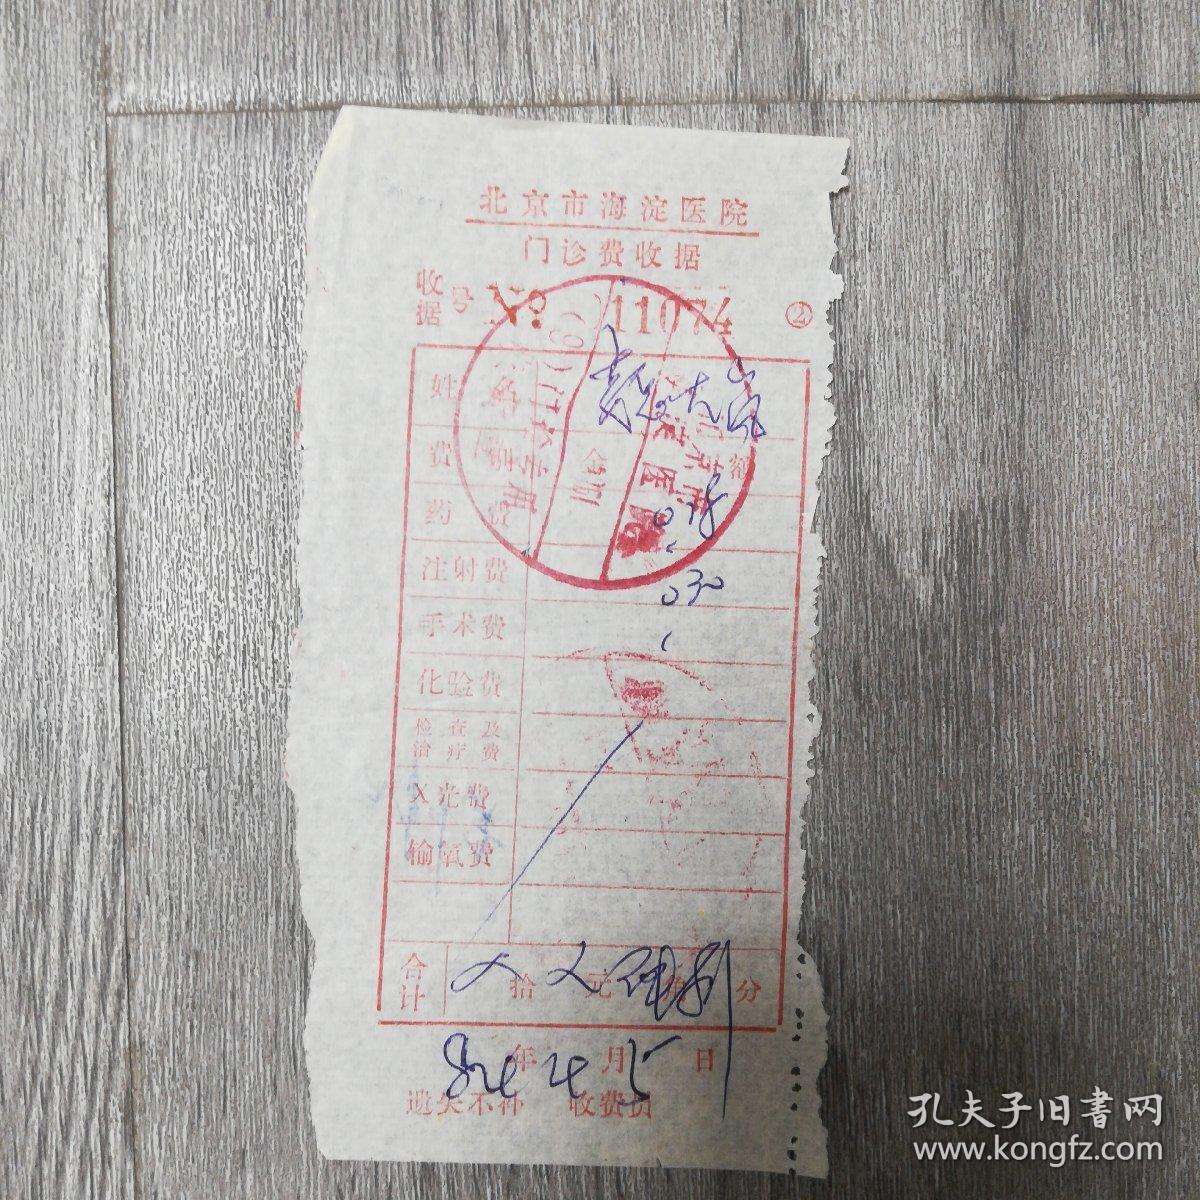 北京市海淀医院跑腿挂号，保证为客户私人信息保密的简单介绍